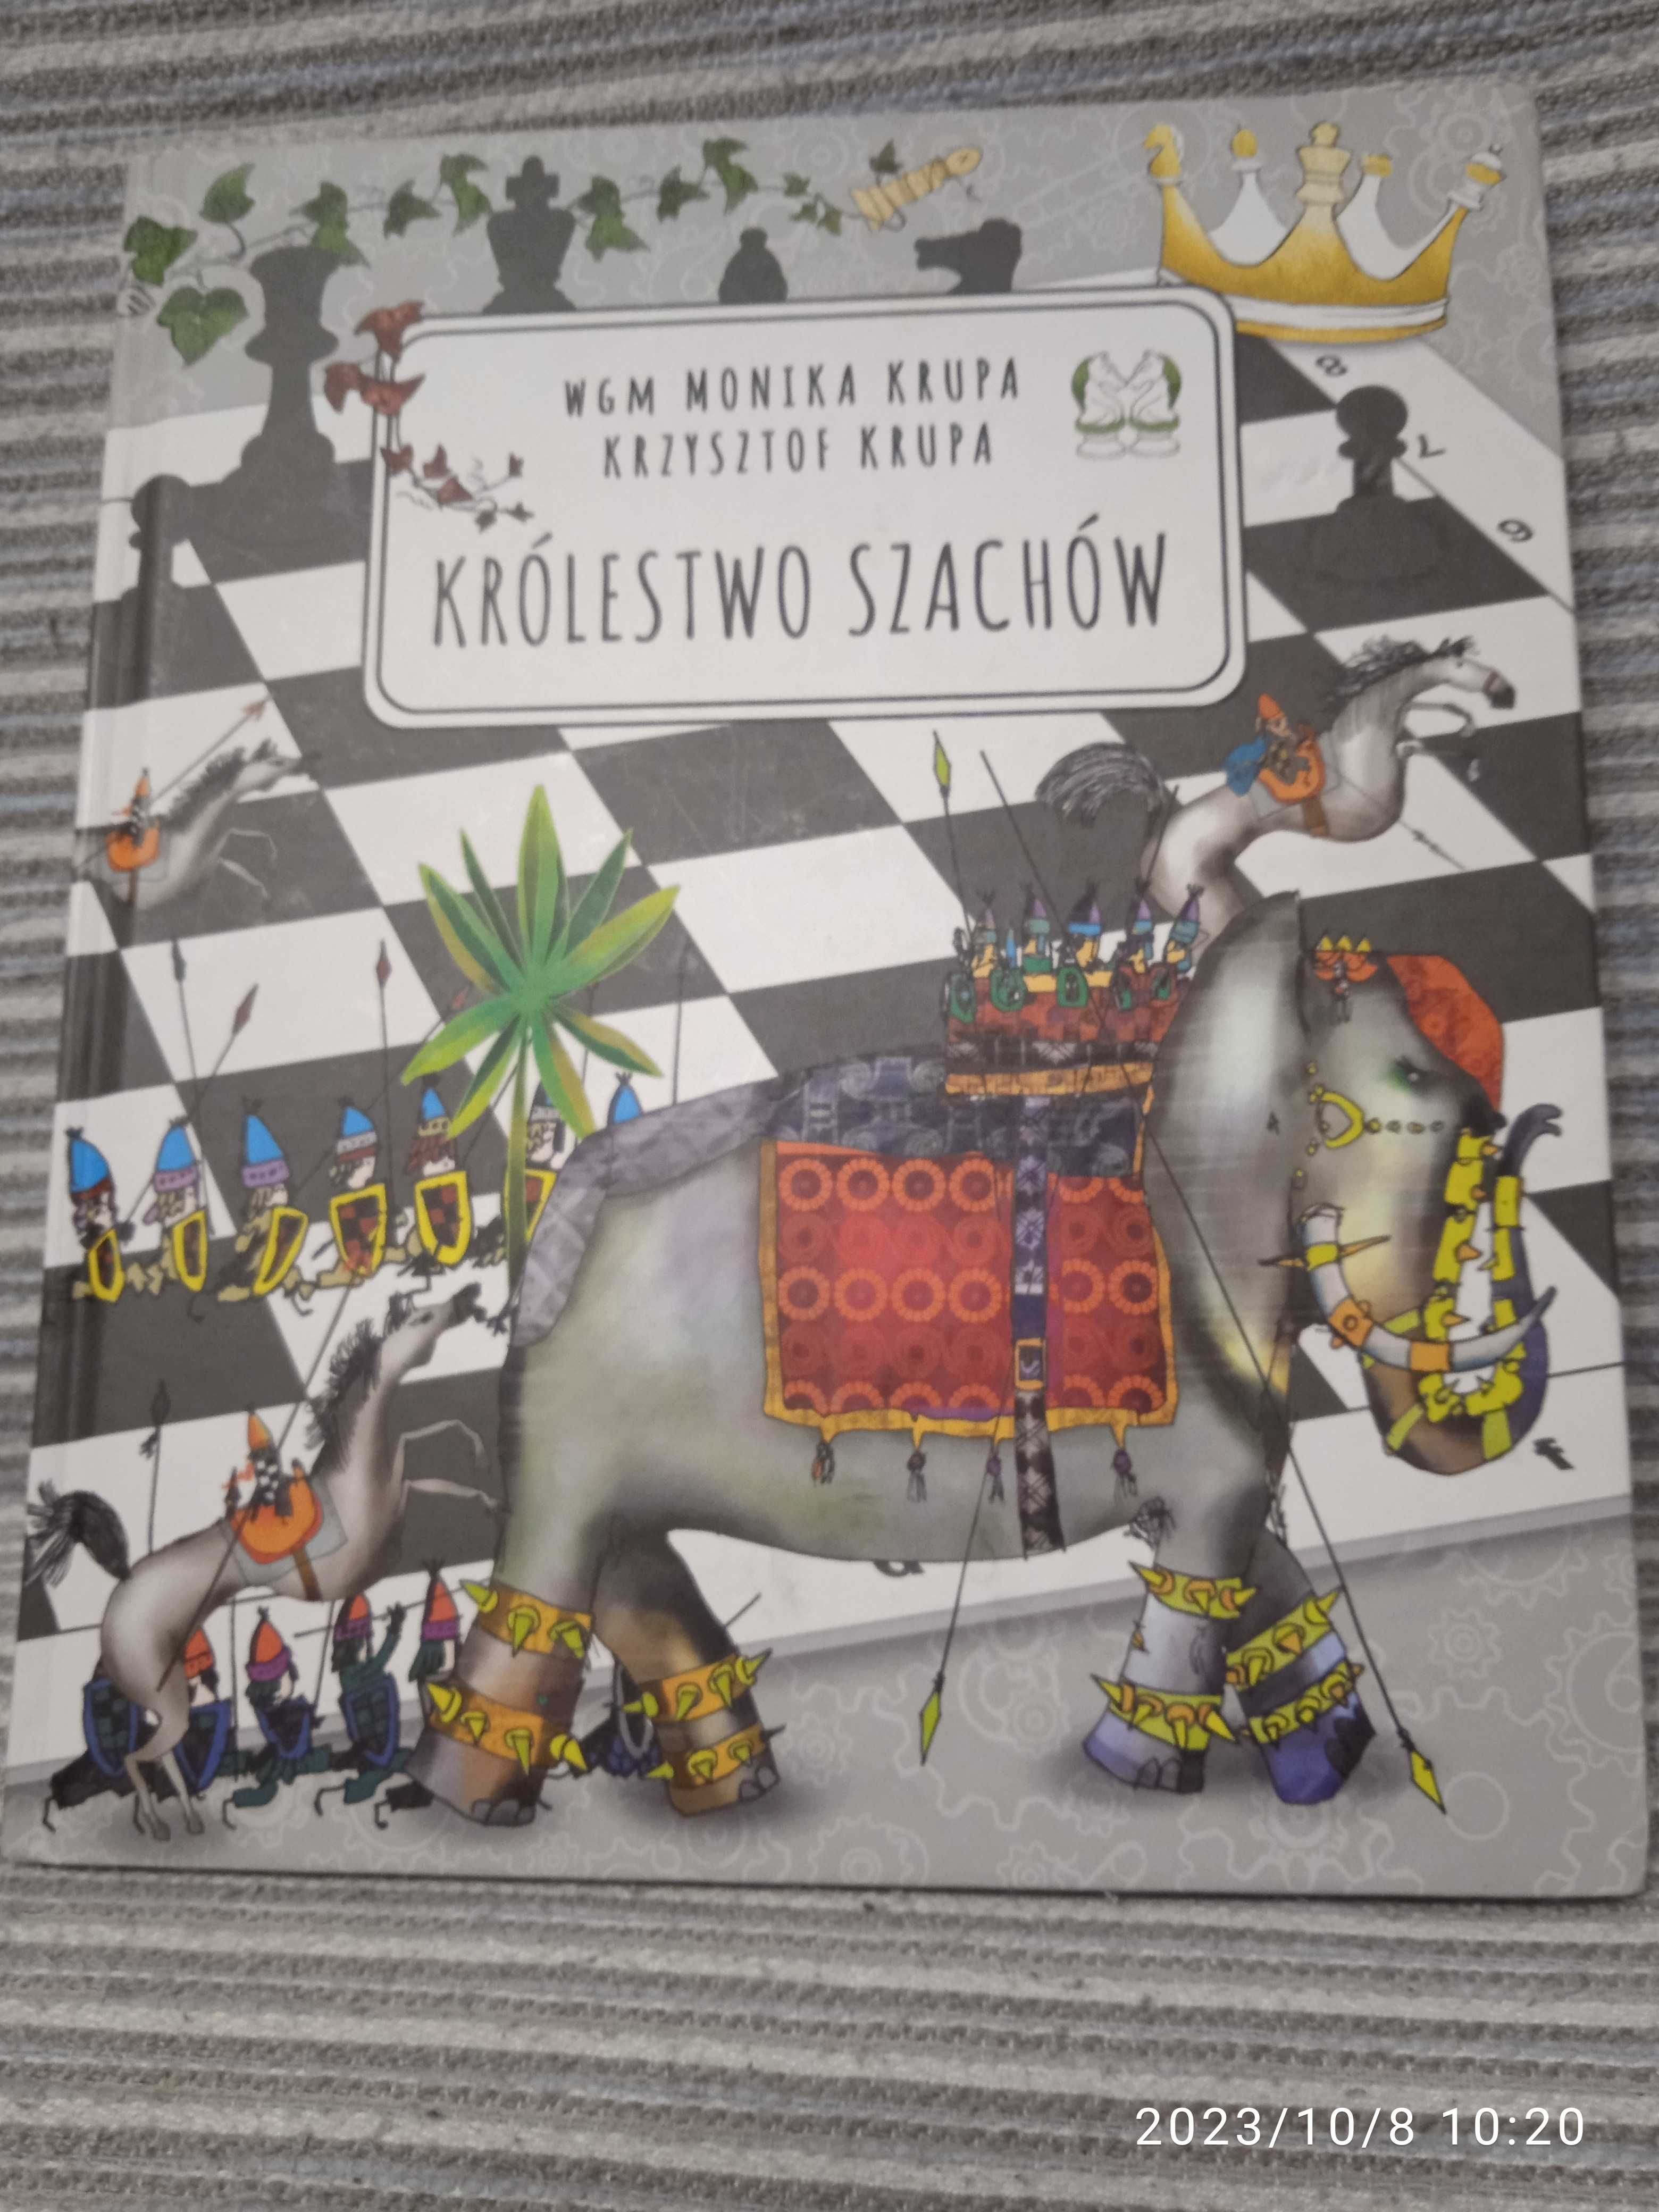 Шахматная новая книга на польском "Шахматное королевство"